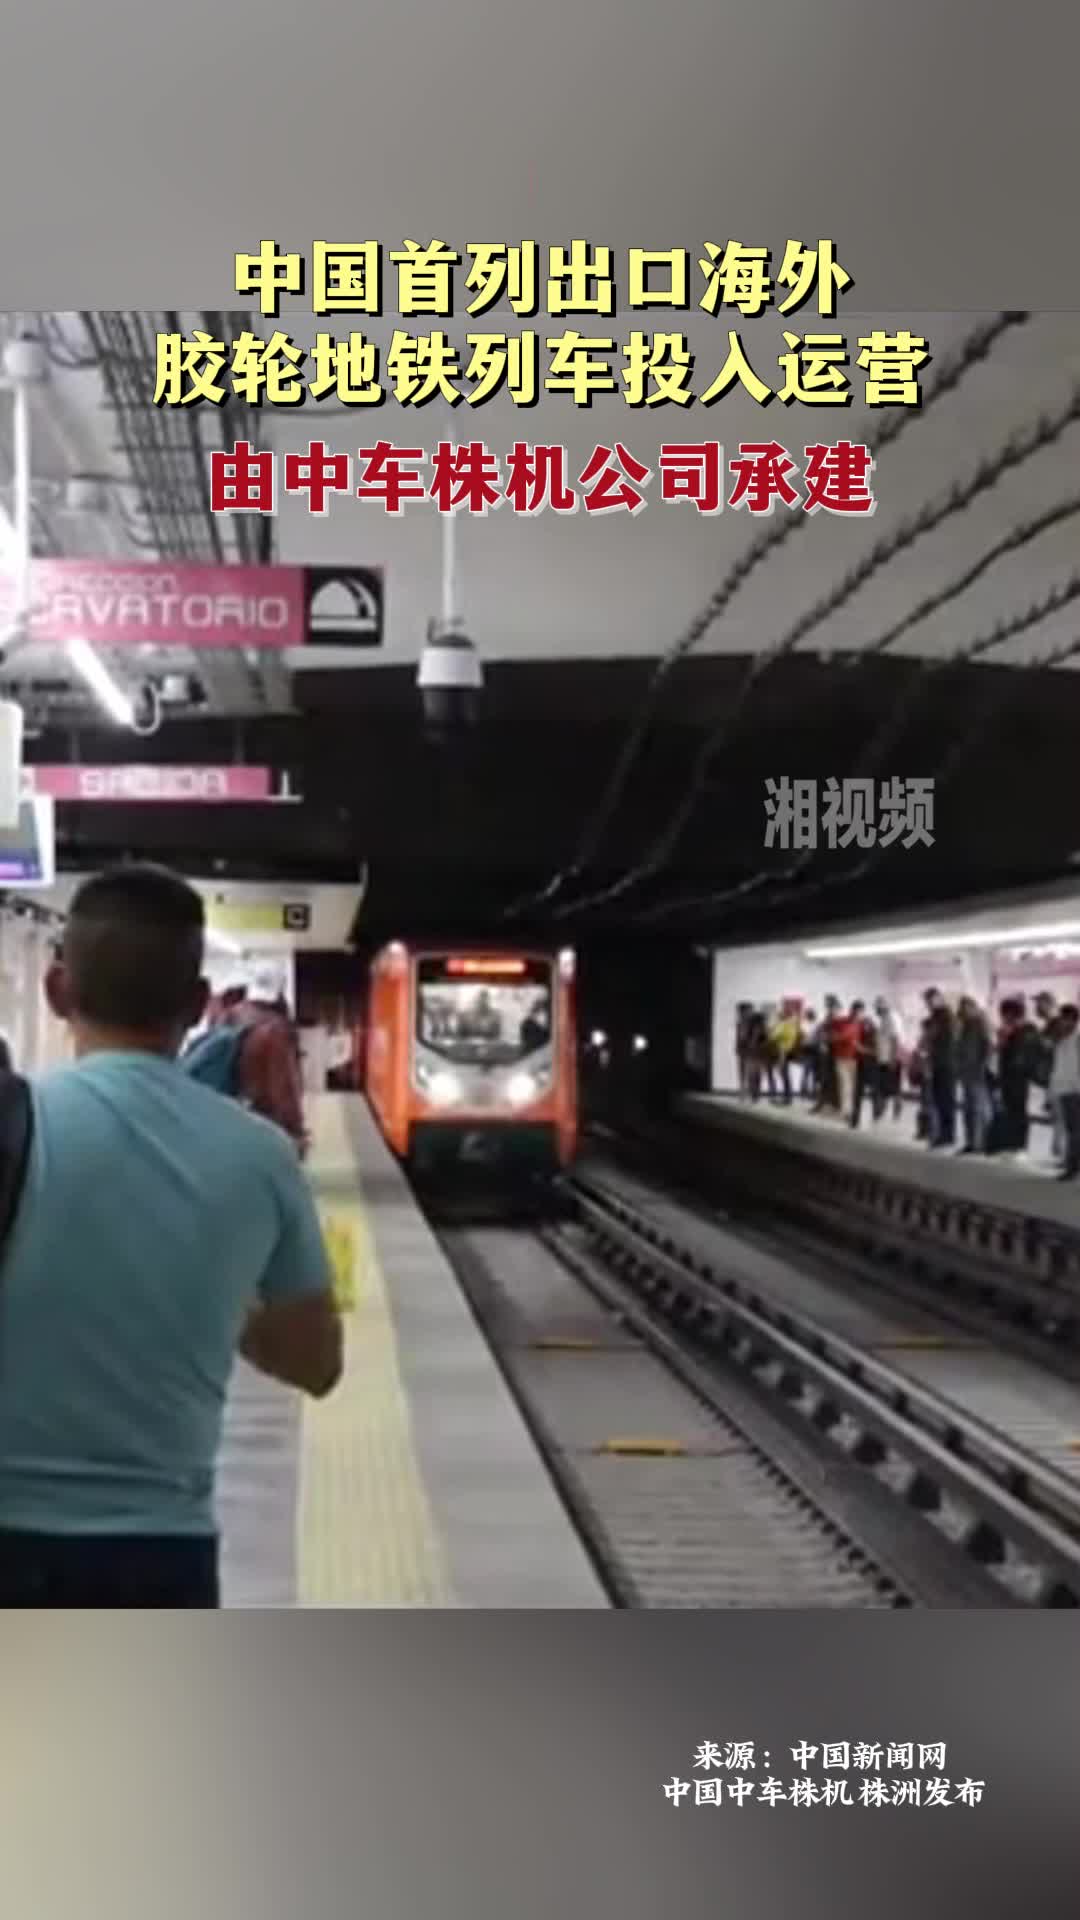 中国首列出口海外胶轮地铁列车投入运营 由中车株机公司承建